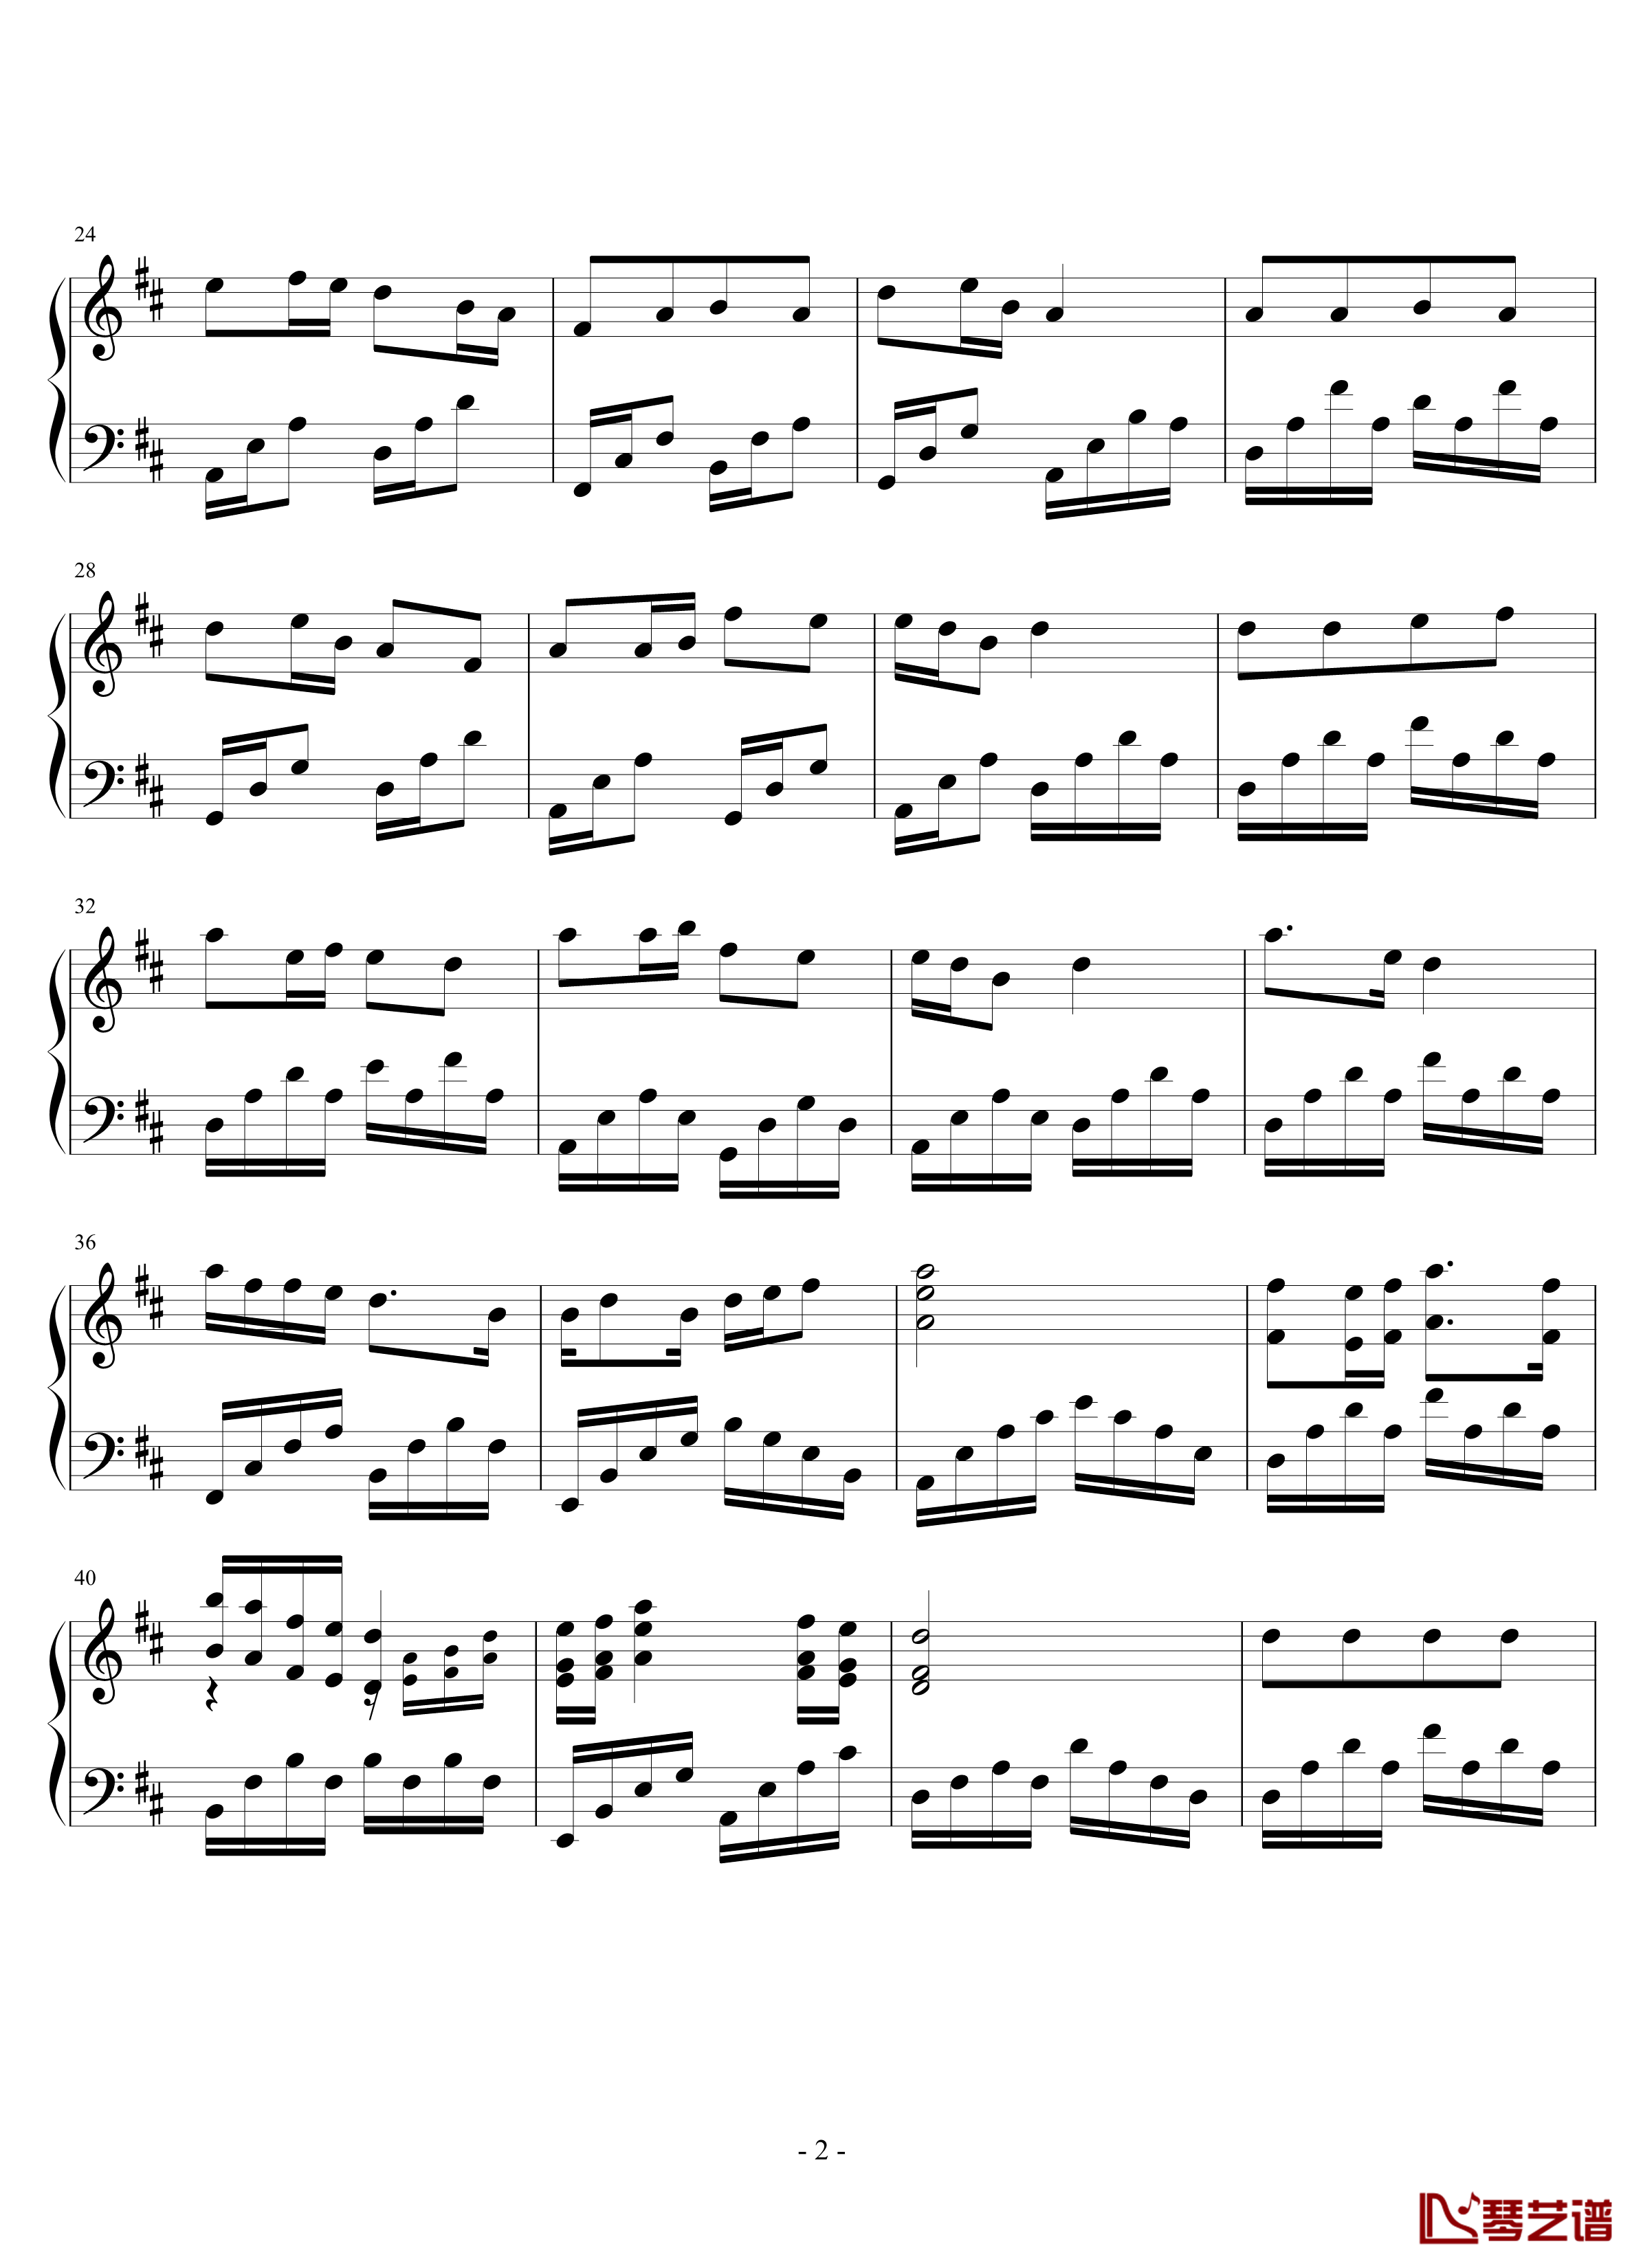 观音心赞钢琴谱-2.0完美版-佛教音乐2